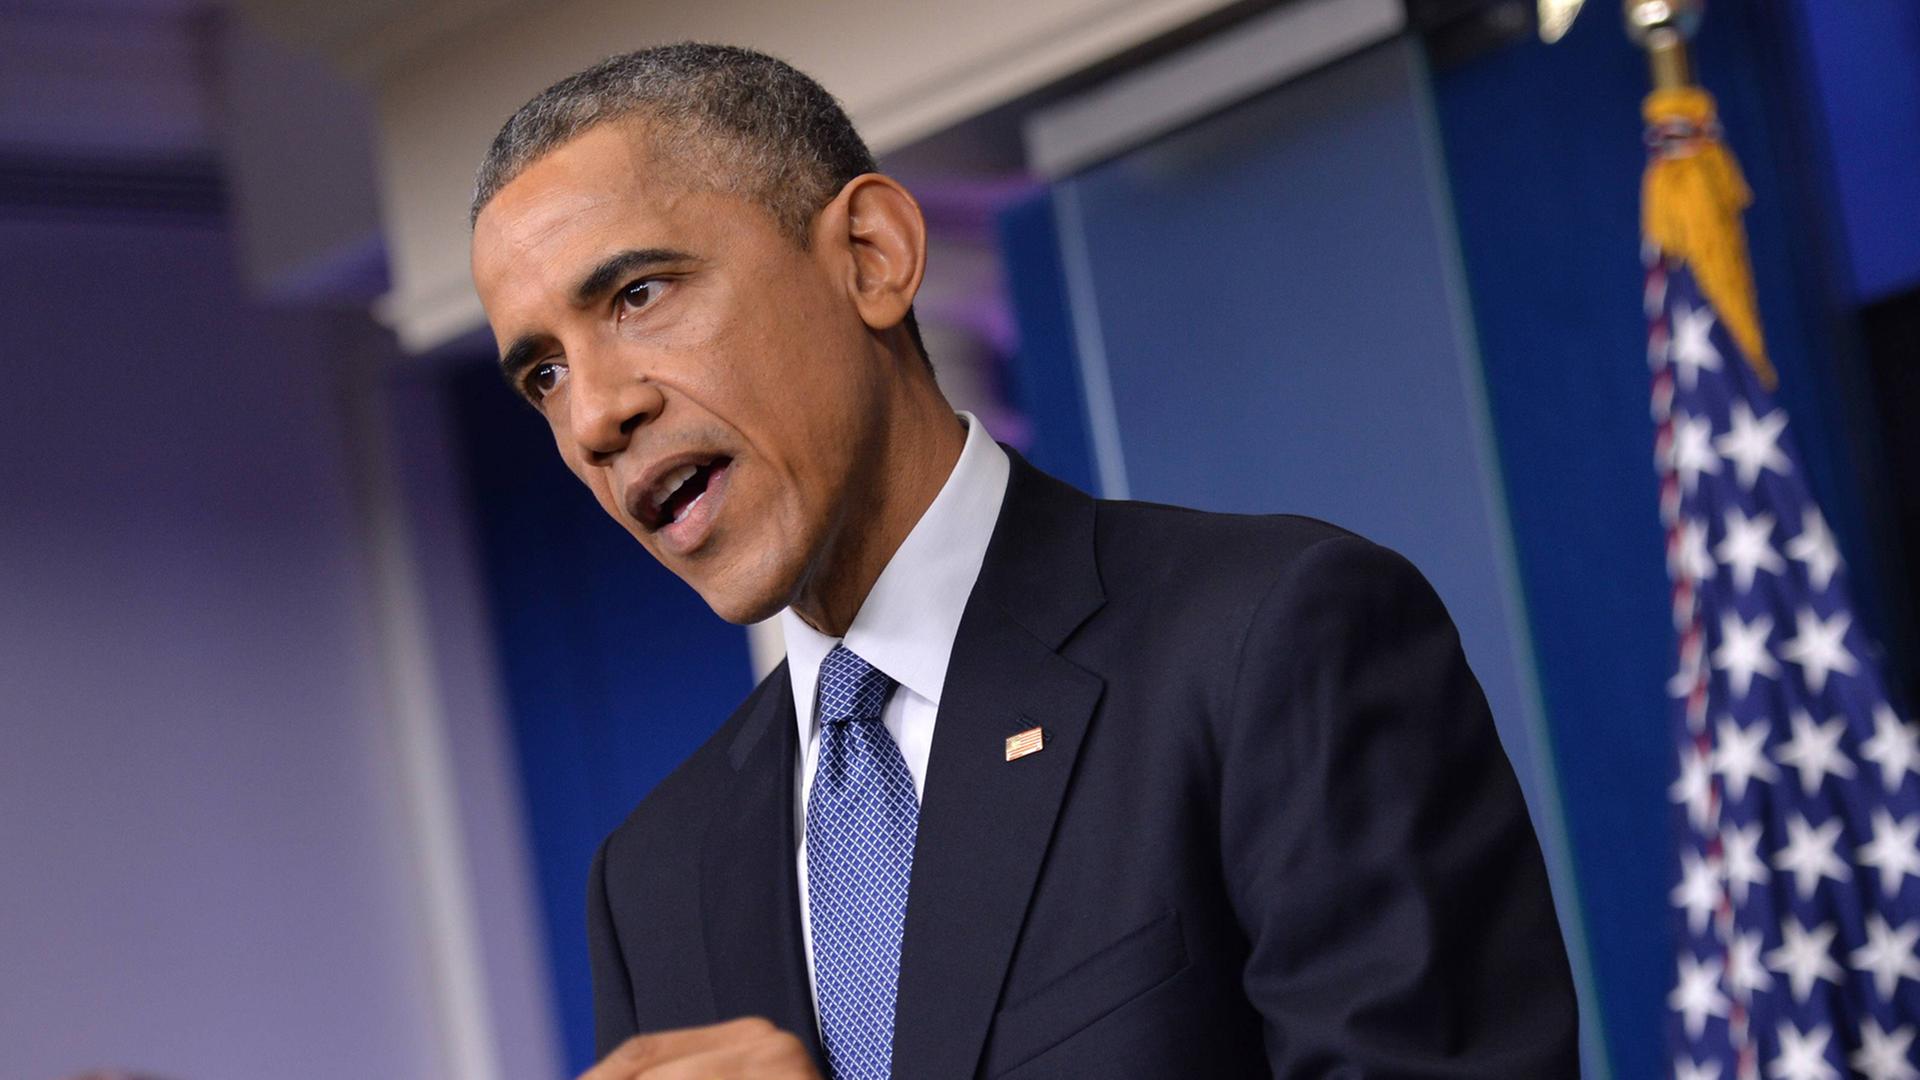 US-Präsident Obama bei einer Pressekonferenz im Weißen Haus am 19.12.2014